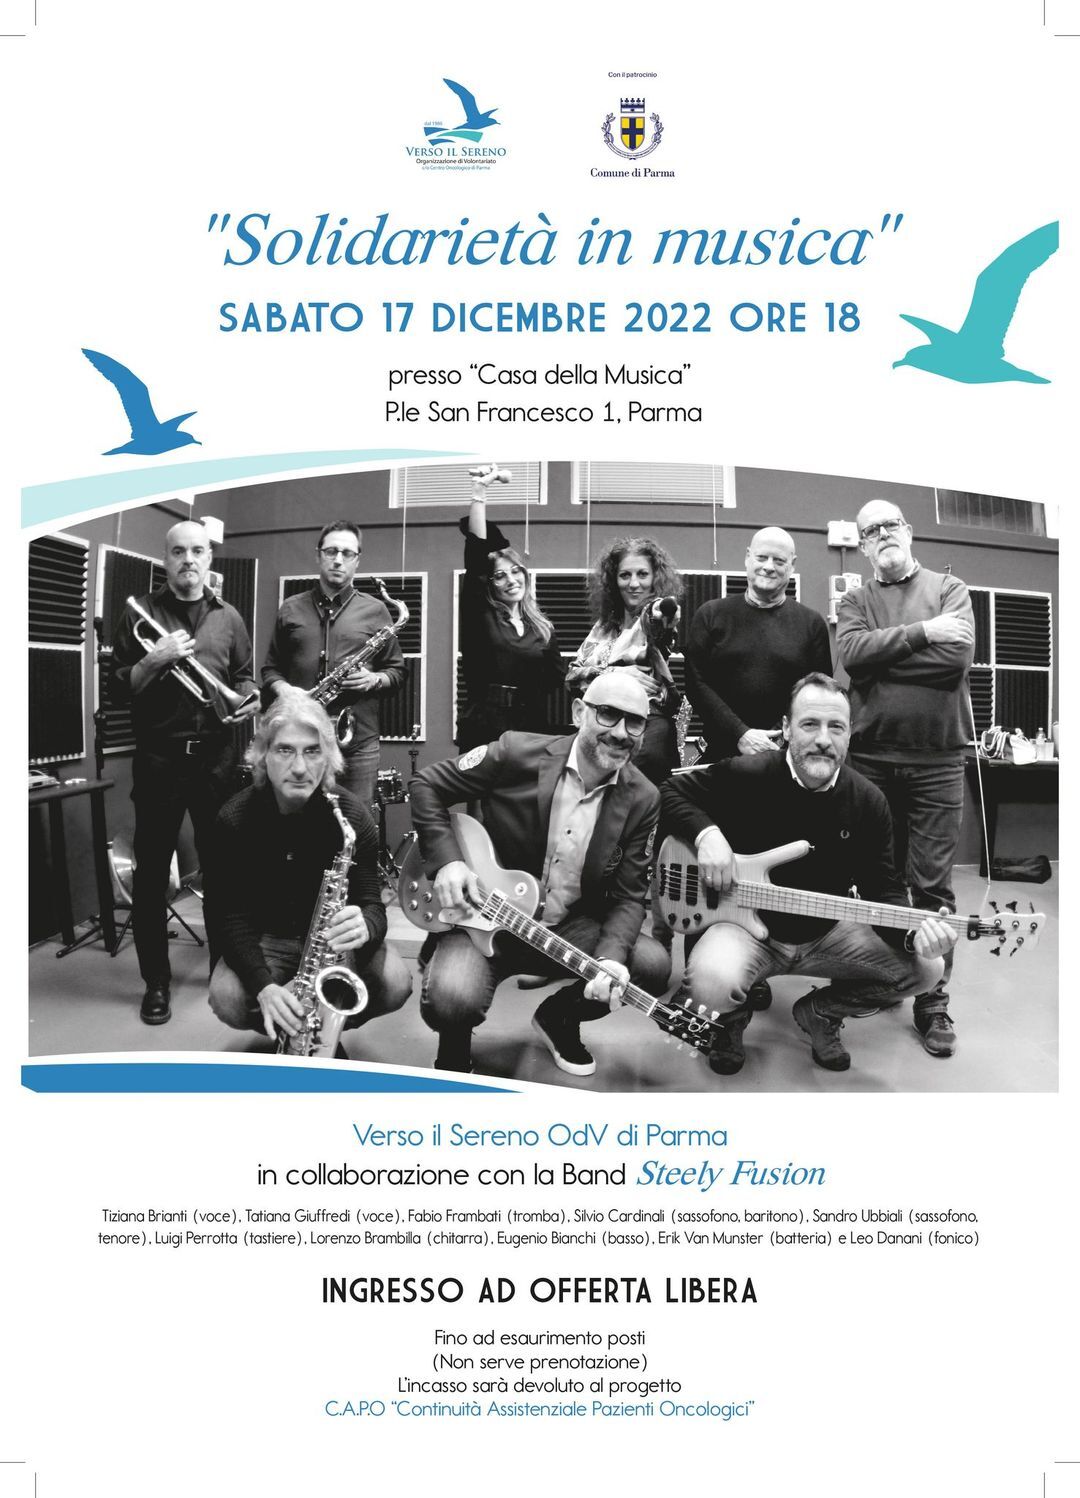 “Solidarietà in musica” concerto organizzato da Verso il Sereno OdV in collaborazione con la Band Steely Fusion